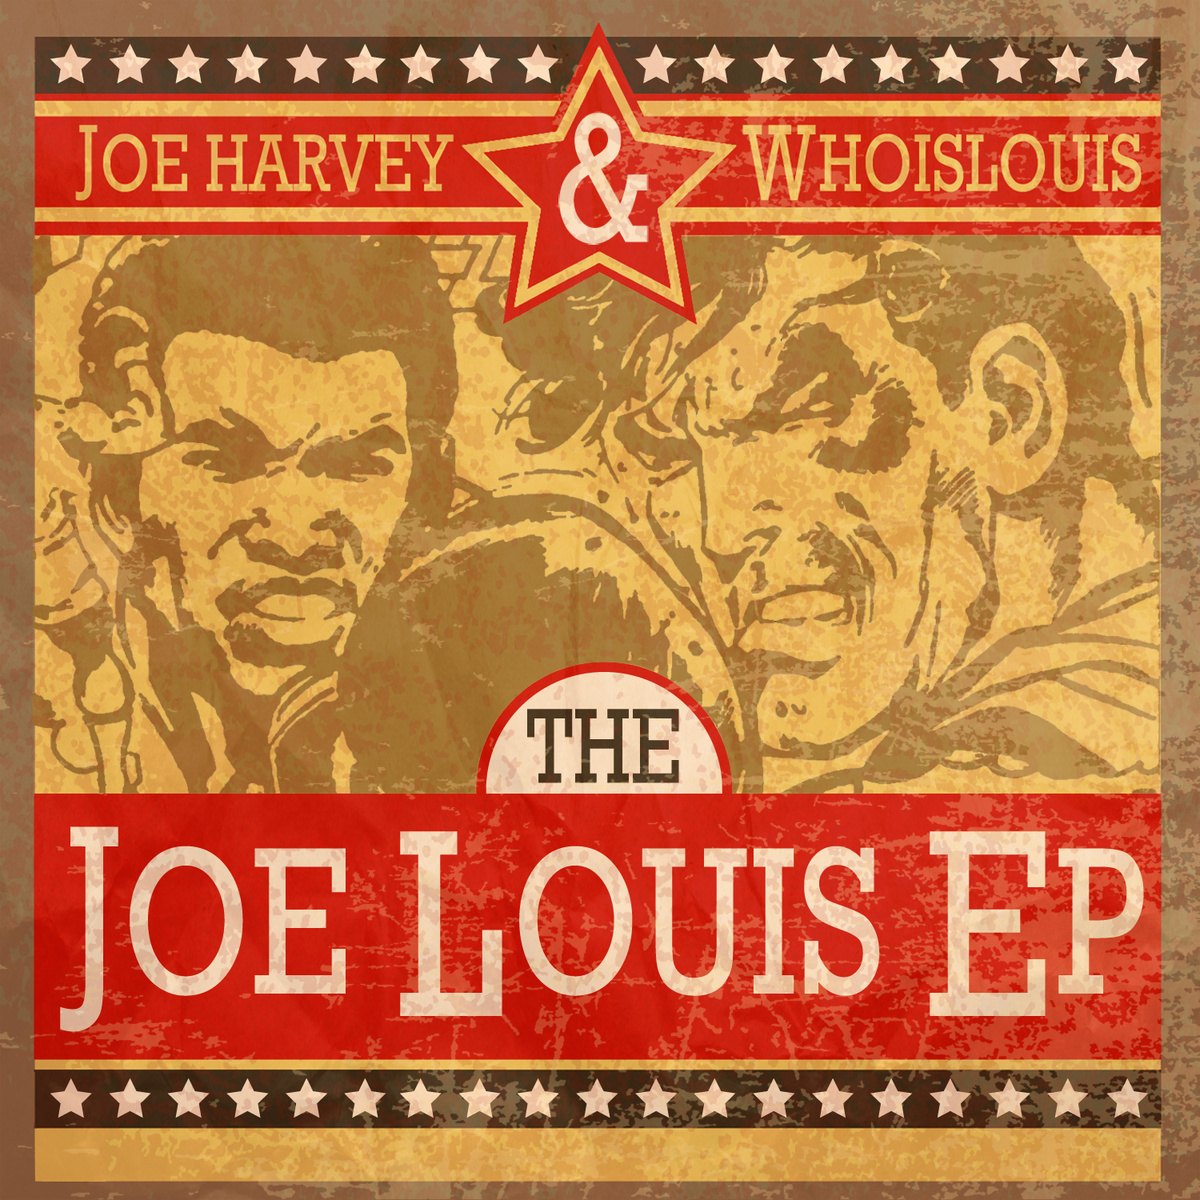 Joe Harvey x WhoisLouis "The Joe Louis EP" Release | @ProformJoe @WhoisLouisMusic